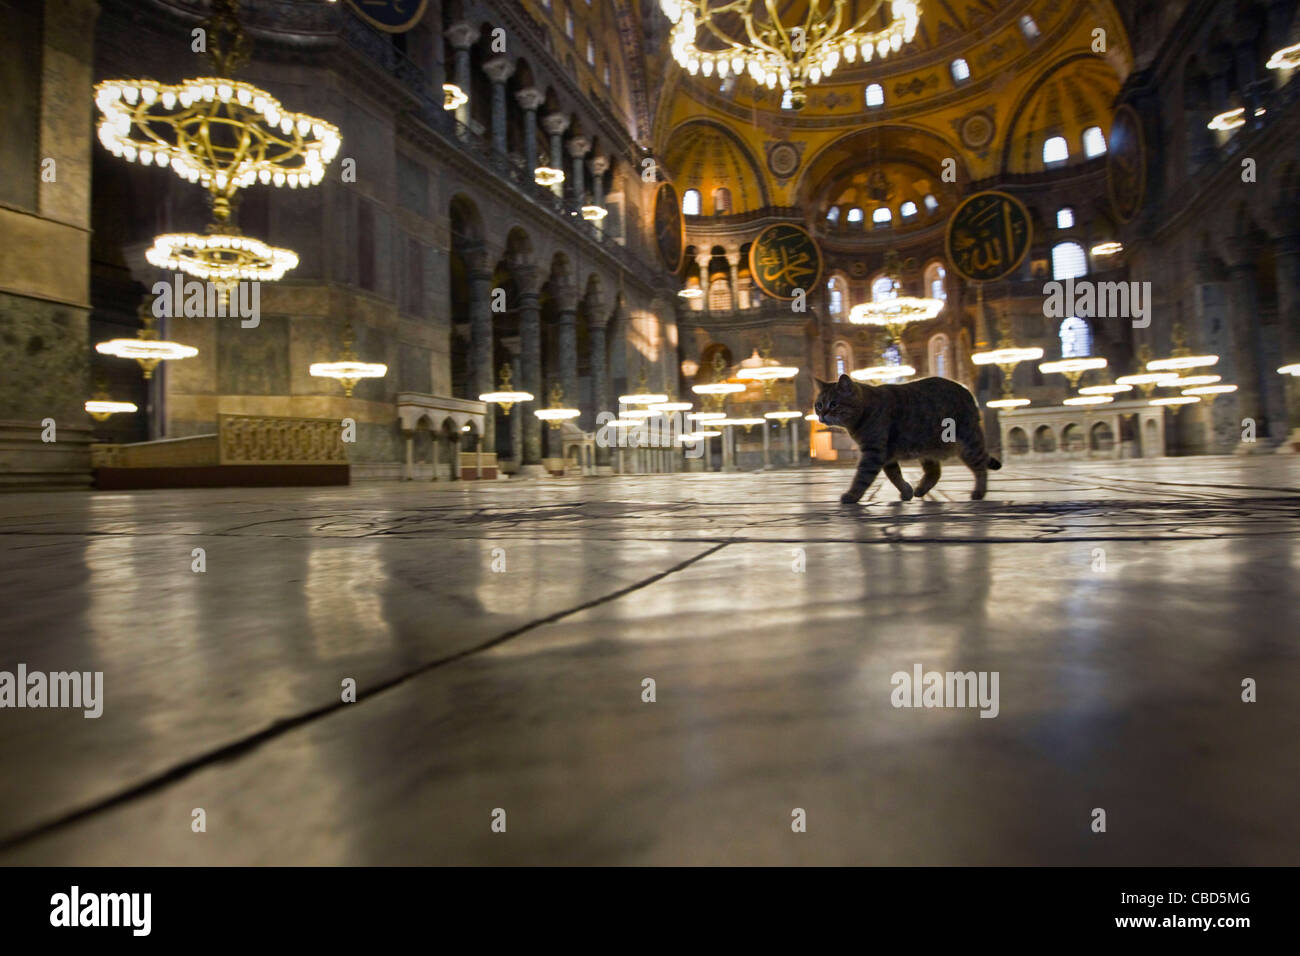 Hagia Sophia, ist eine ehemalige orthodoxen patriarchalischen Basilika, später eine Moschee und heute ein Museum in Istanbul, Türkei. Obama-Katze, namens Stockfoto